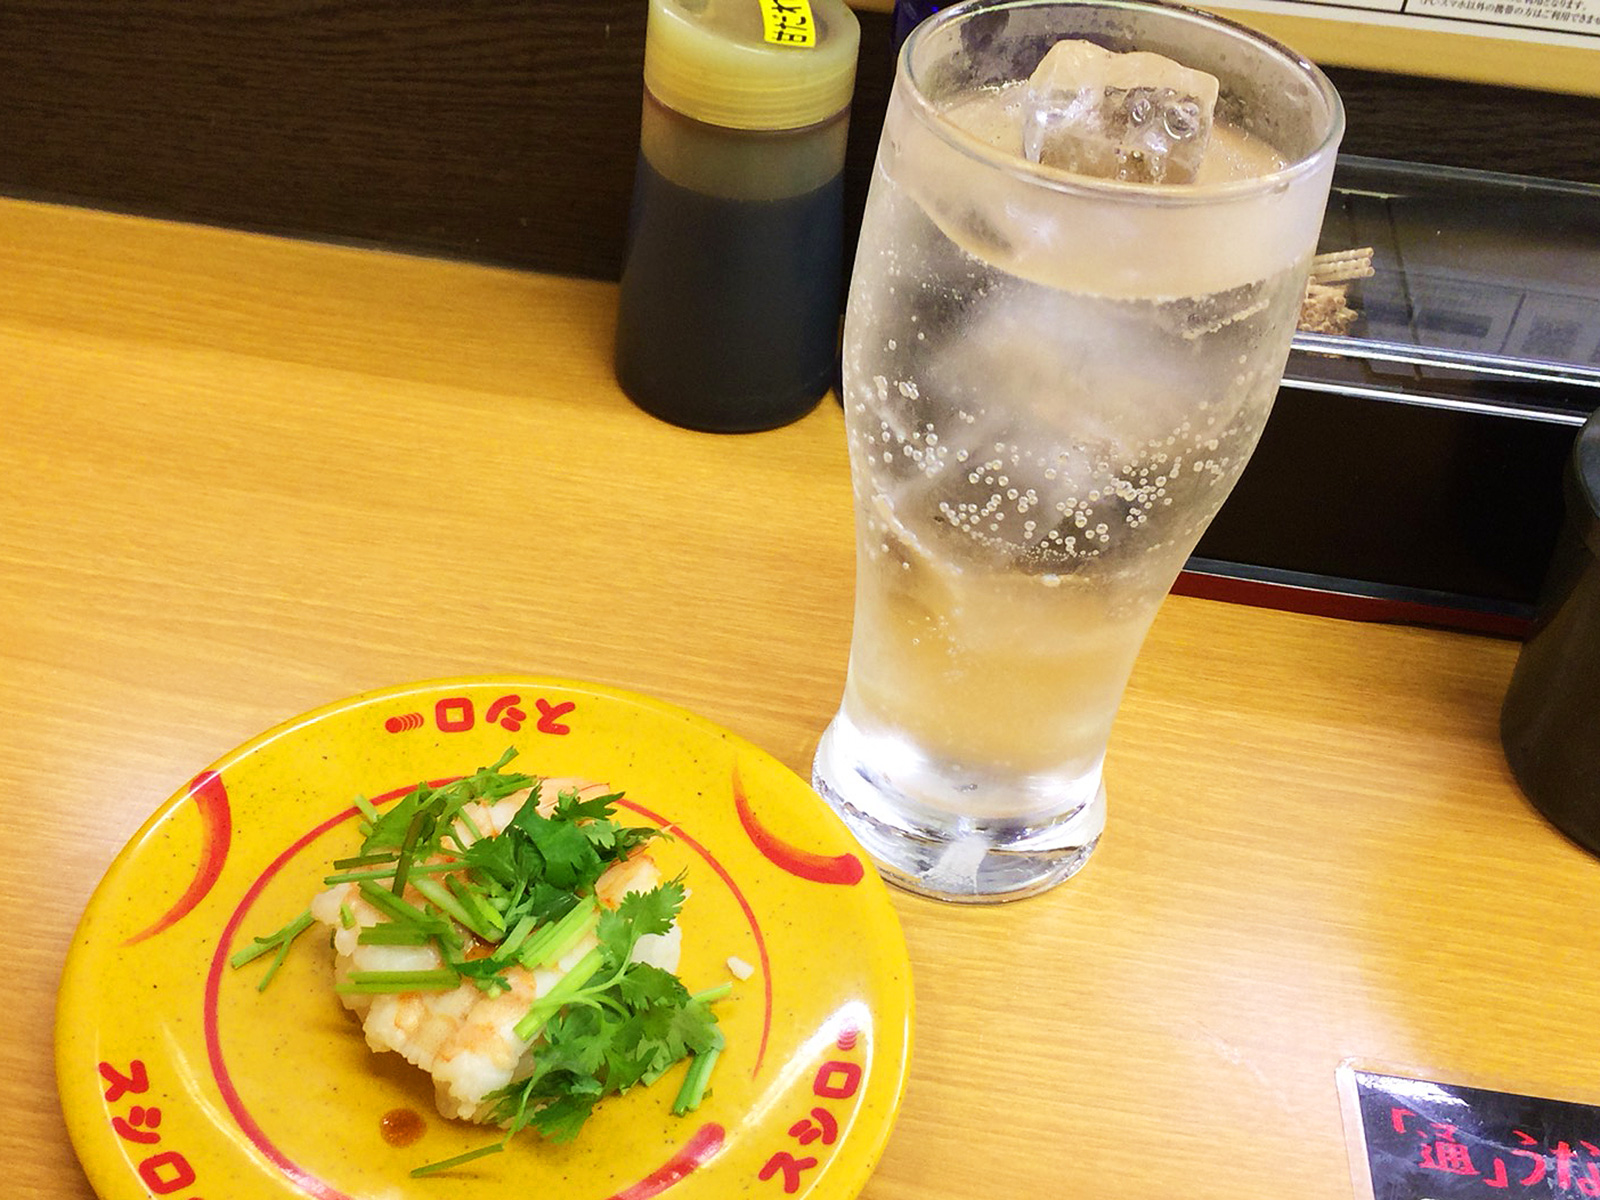 「スシロー清須古城店」のレモンサワーとお寿司いろいろ @西枇杷島